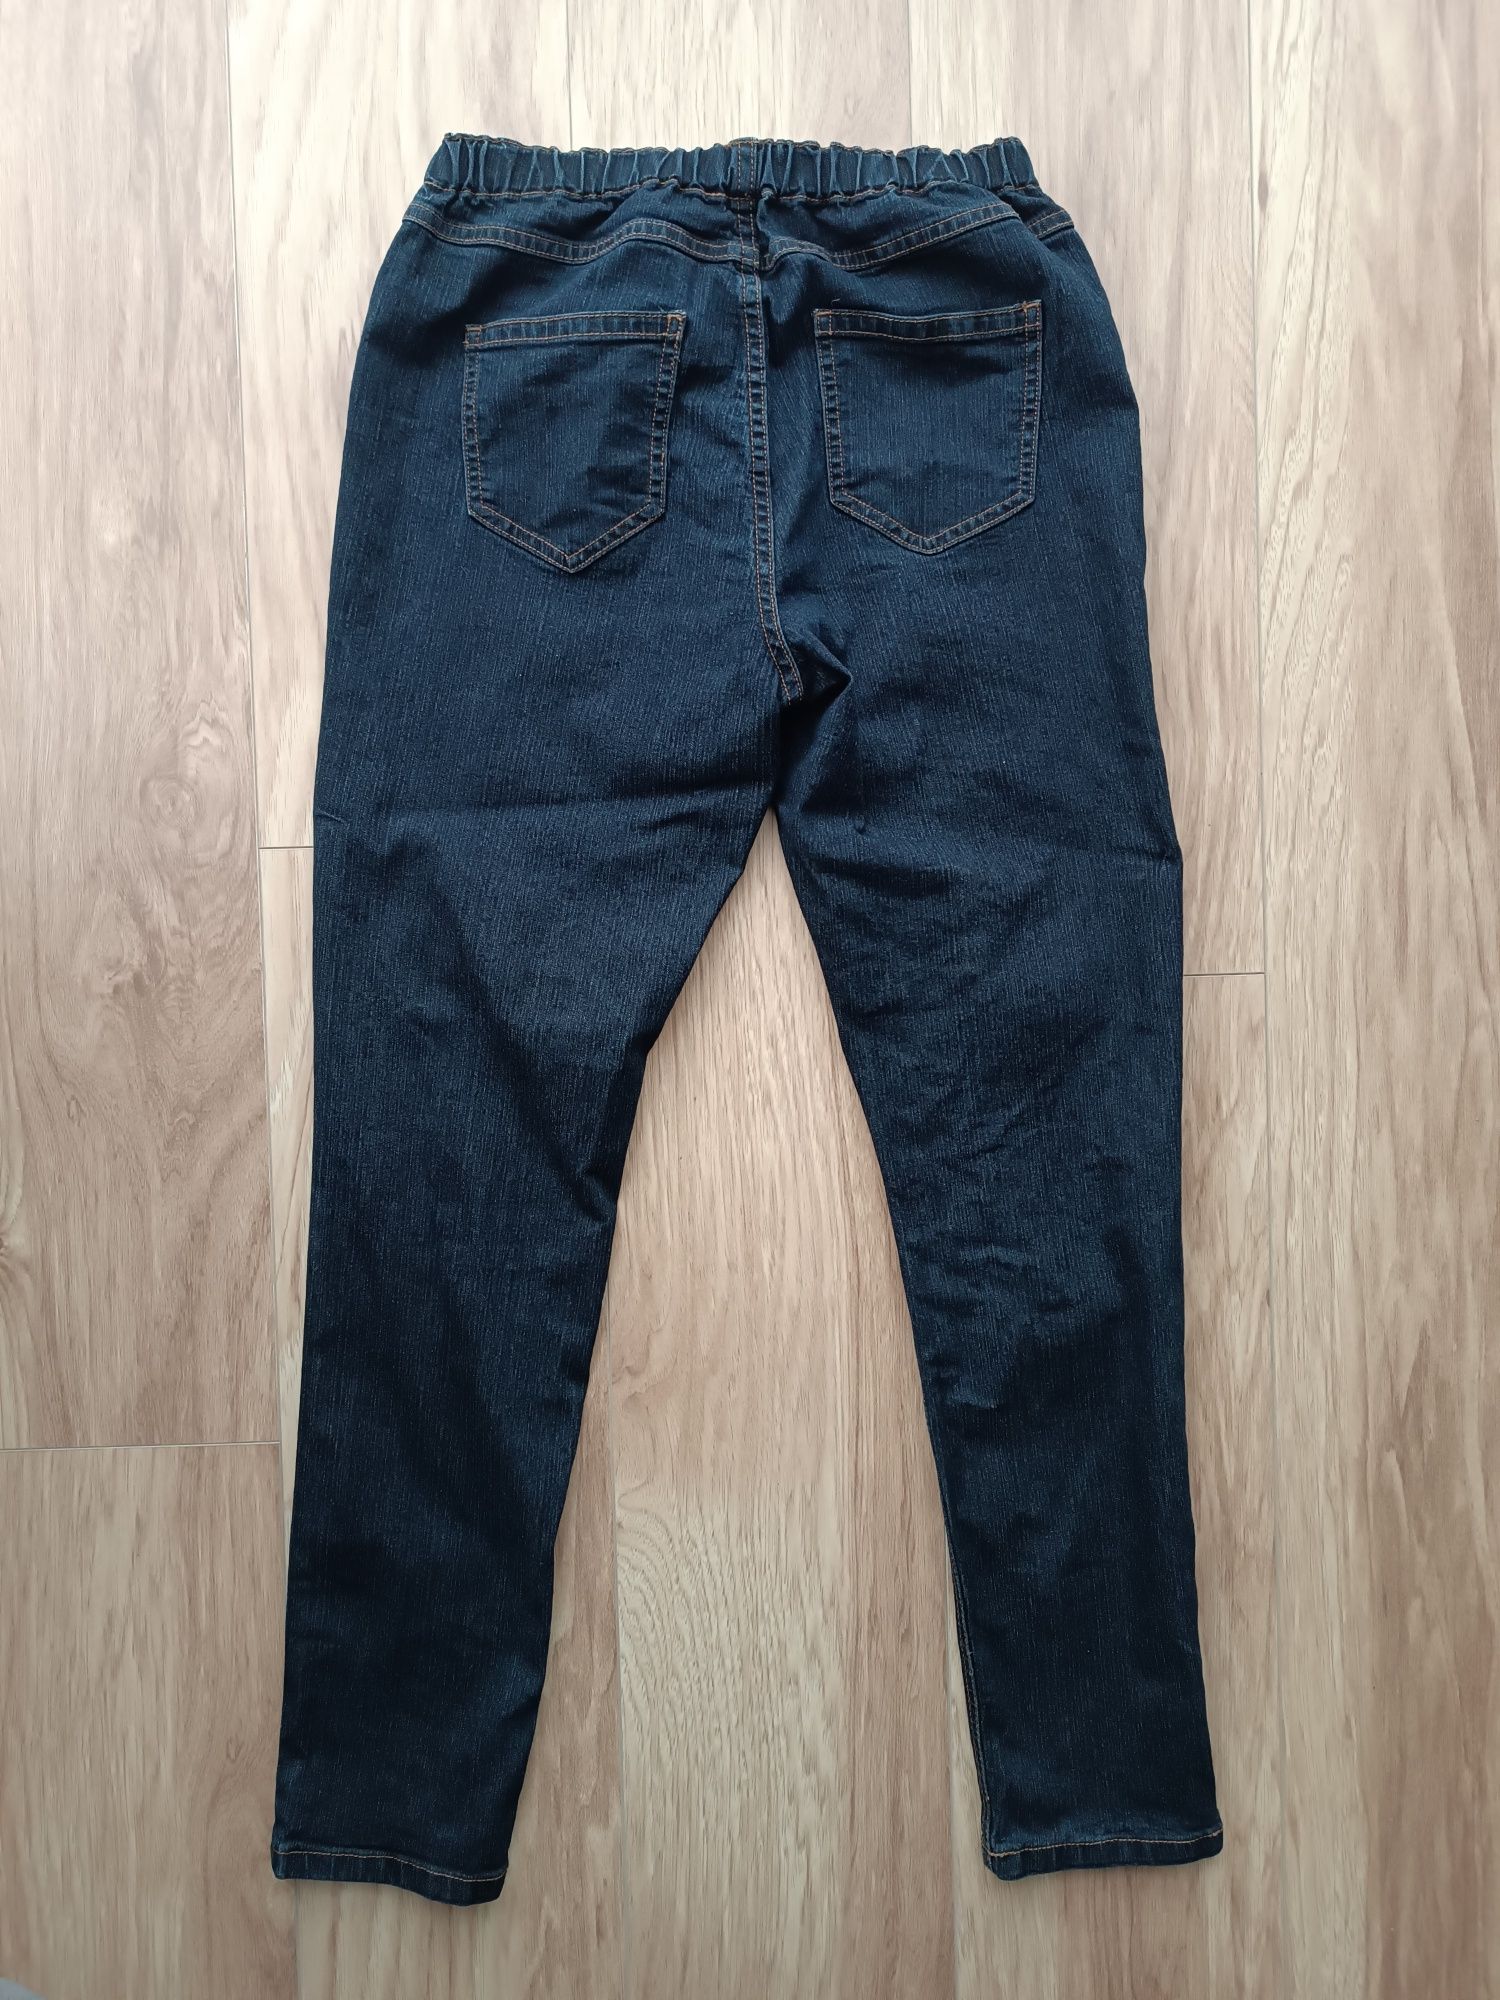 Granatowe długie spodnie jeansy jegginsy L 40